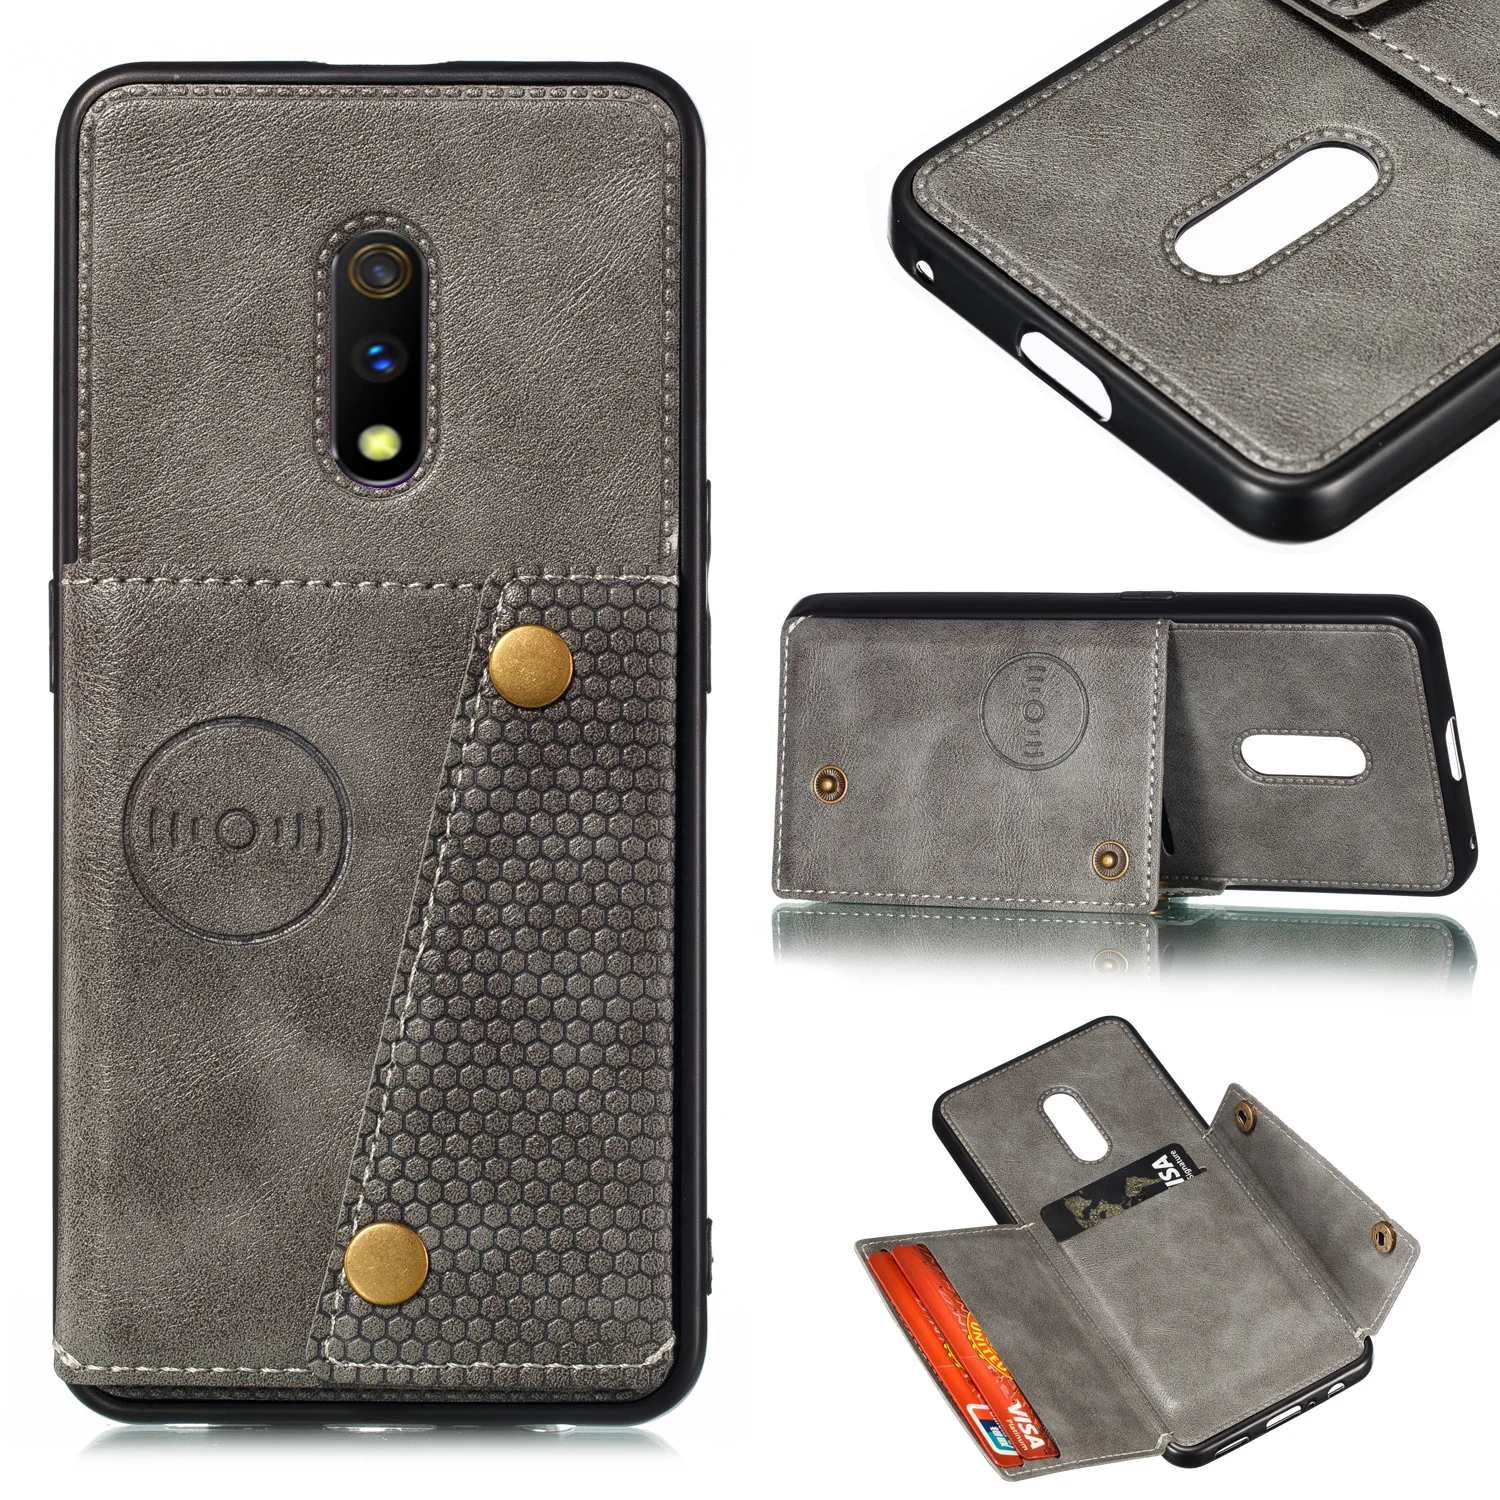 Чехол-бумажник для OPPO F11 REALME 3 A9 Pro X K3 из искусственной кожи с держателем для карт, задняя крышка для телефона с магнитной подставкой OPPO RENO Z 10x Zoom